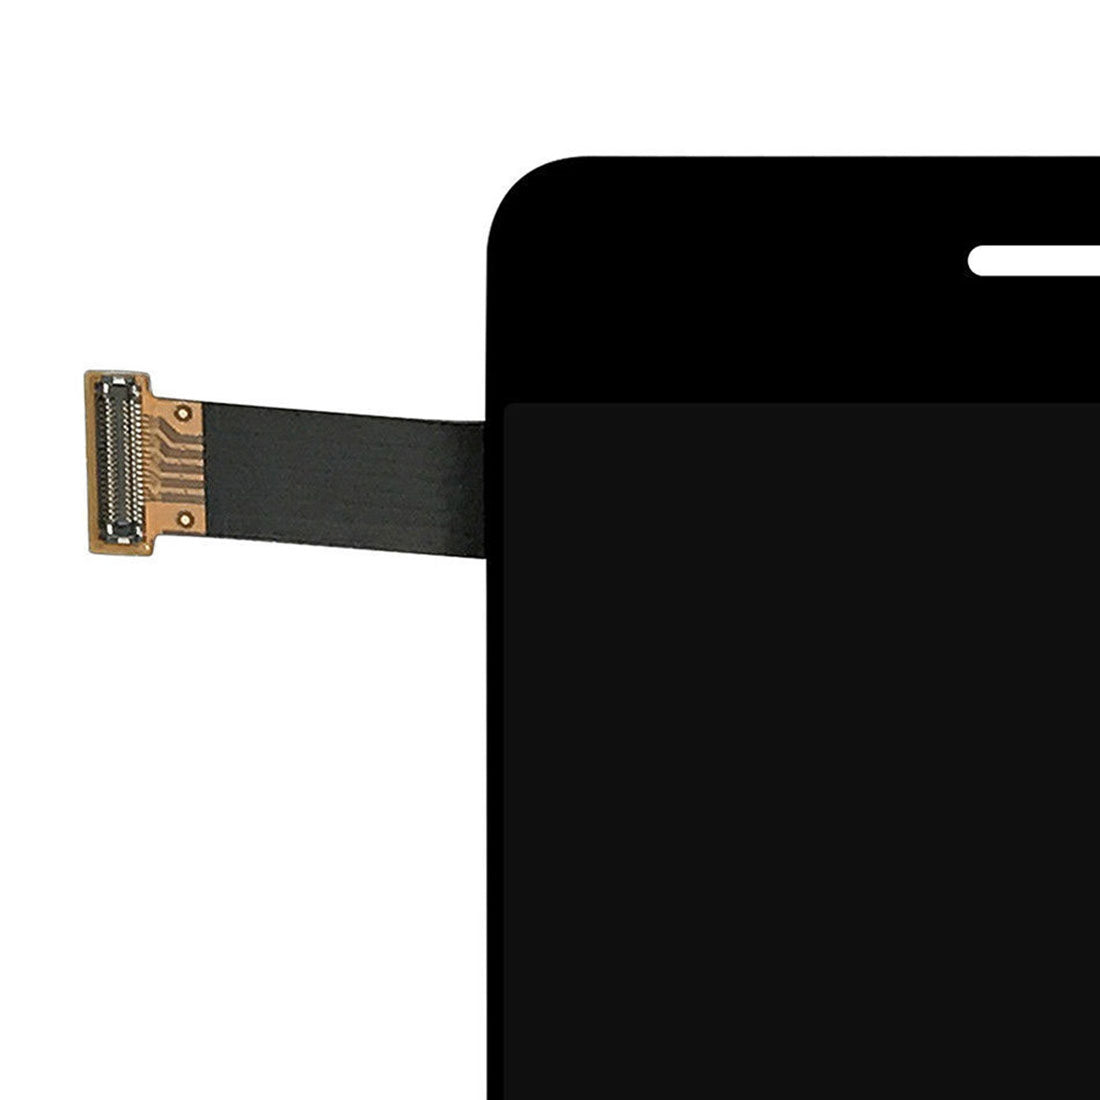 Ecran LCD + Numériseur Tactile Meizu Pro 7 Plus Noir